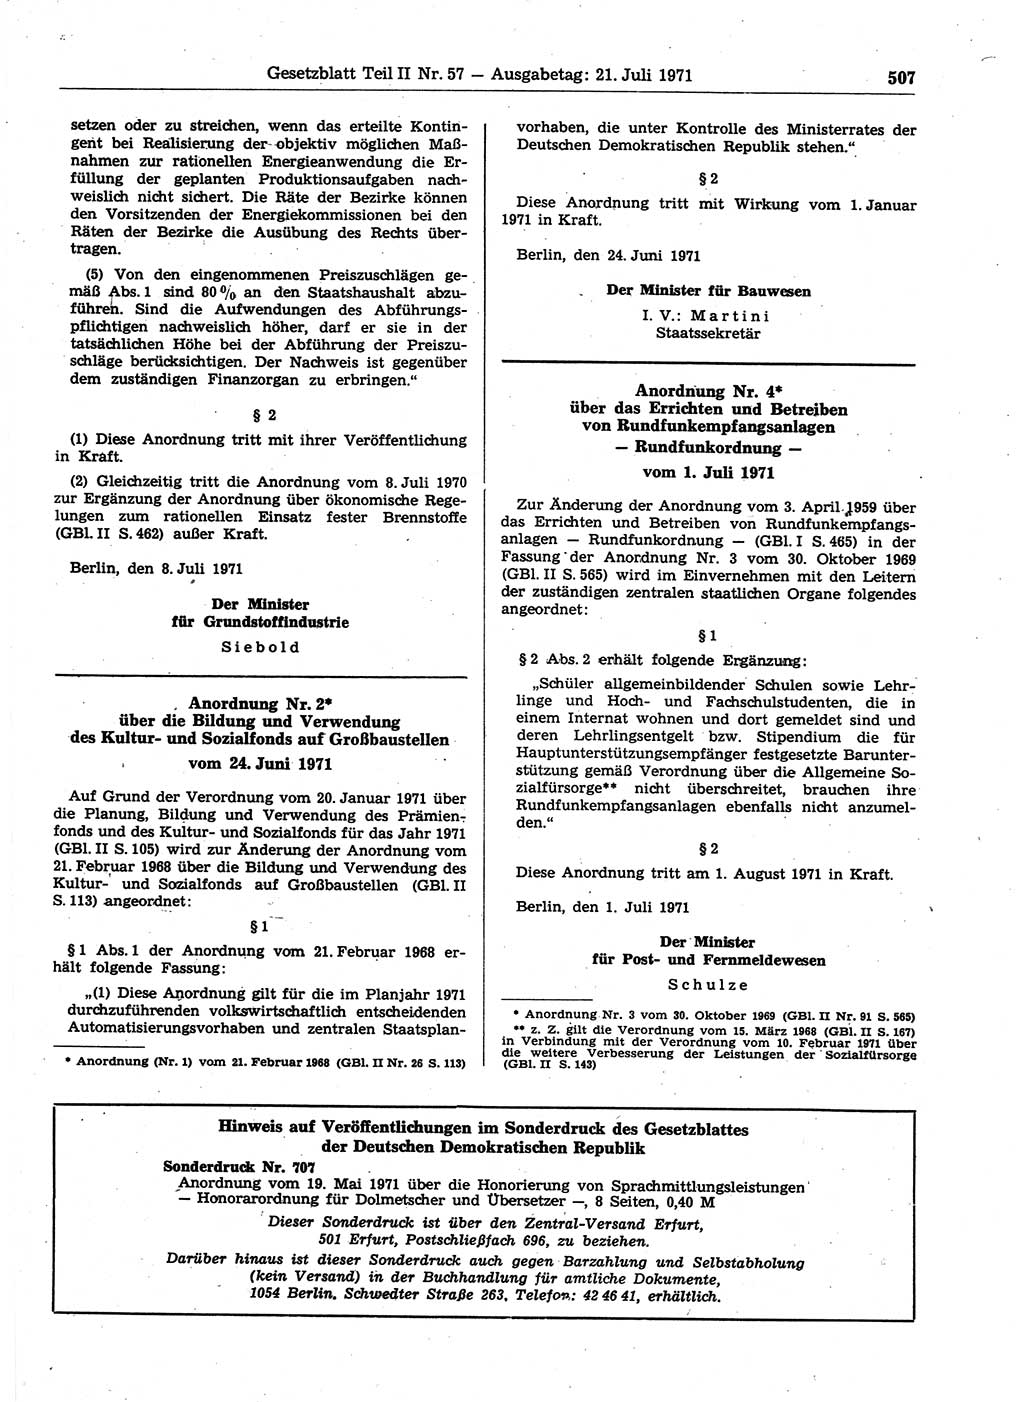 Gesetzblatt (GBl.) der Deutschen Demokratischen Republik (DDR) Teil ⅠⅠ 1971, Seite 507 (GBl. DDR ⅠⅠ 1971, S. 507)